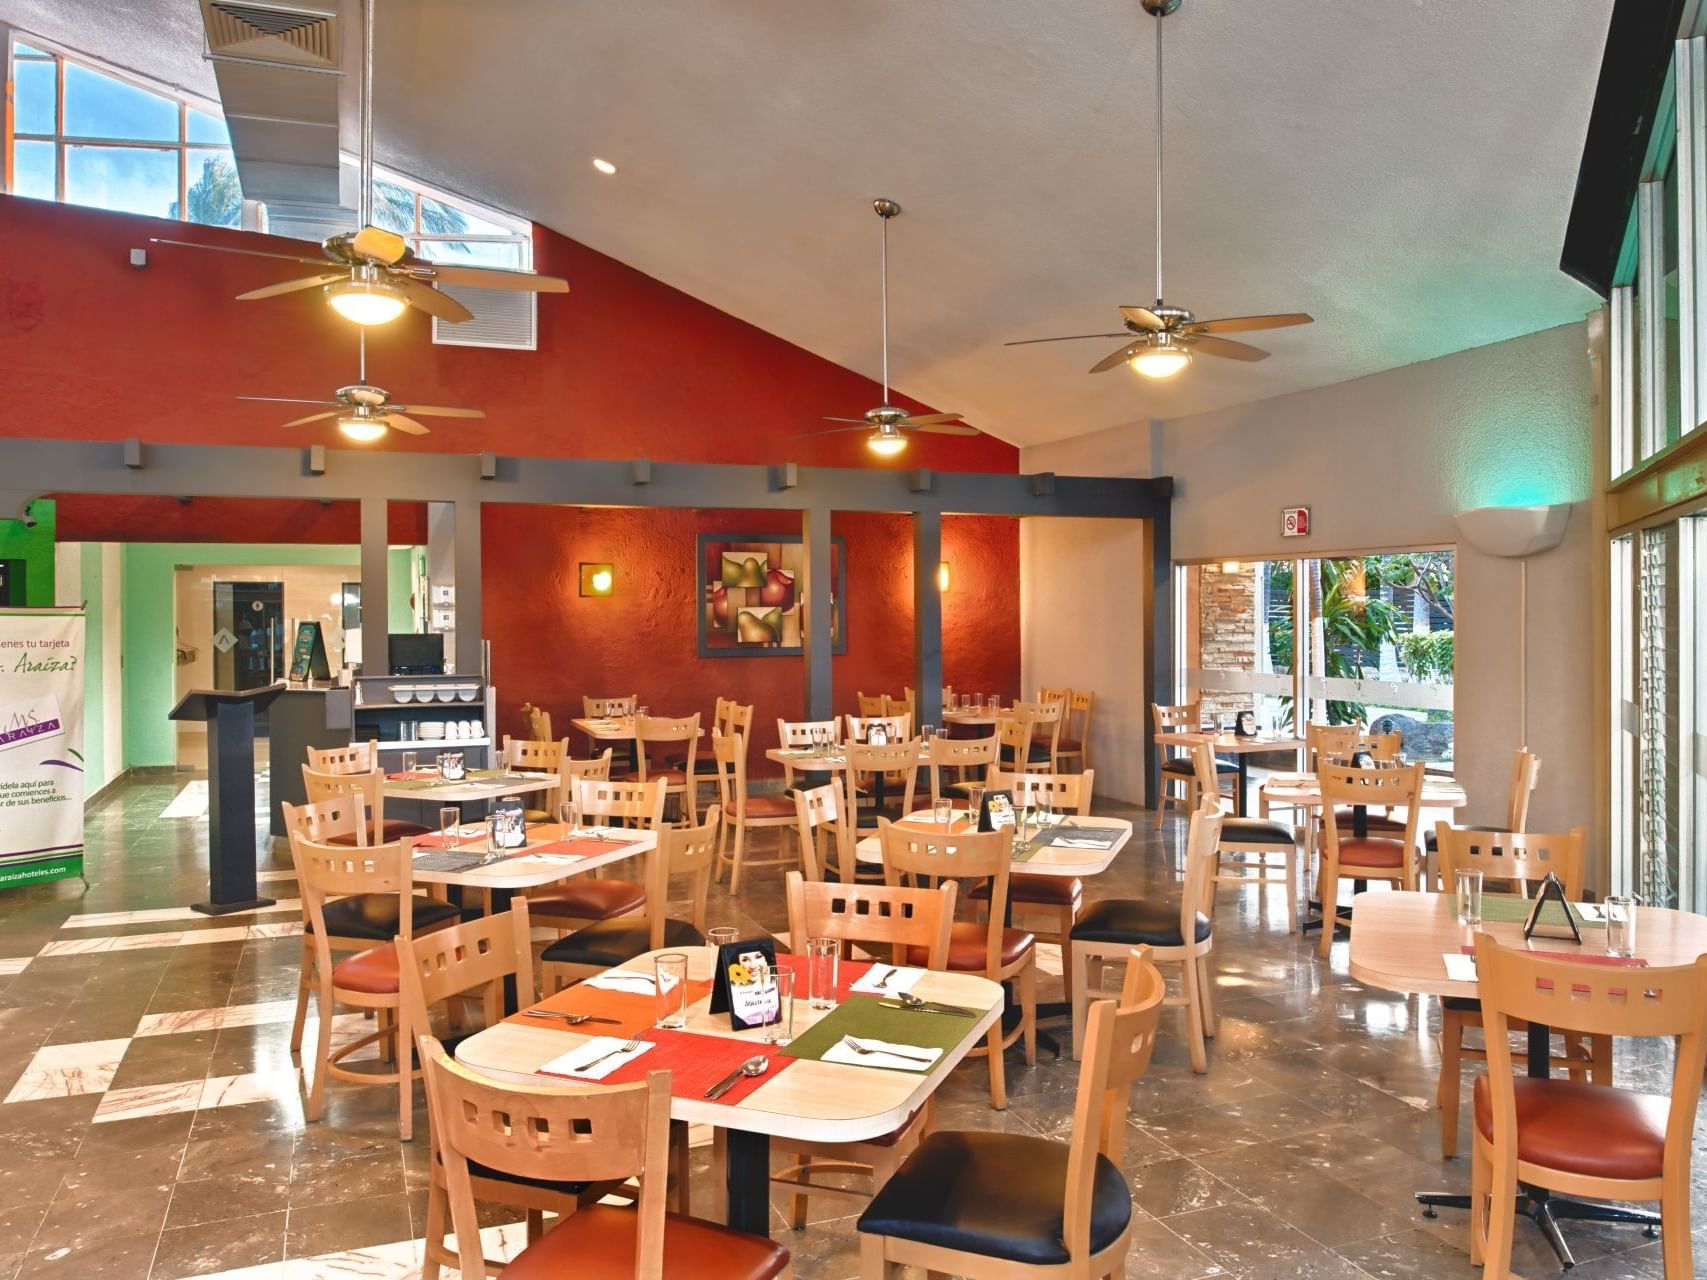 Dining area in La Pergola Restaurant at Araiza Hotel Palmira